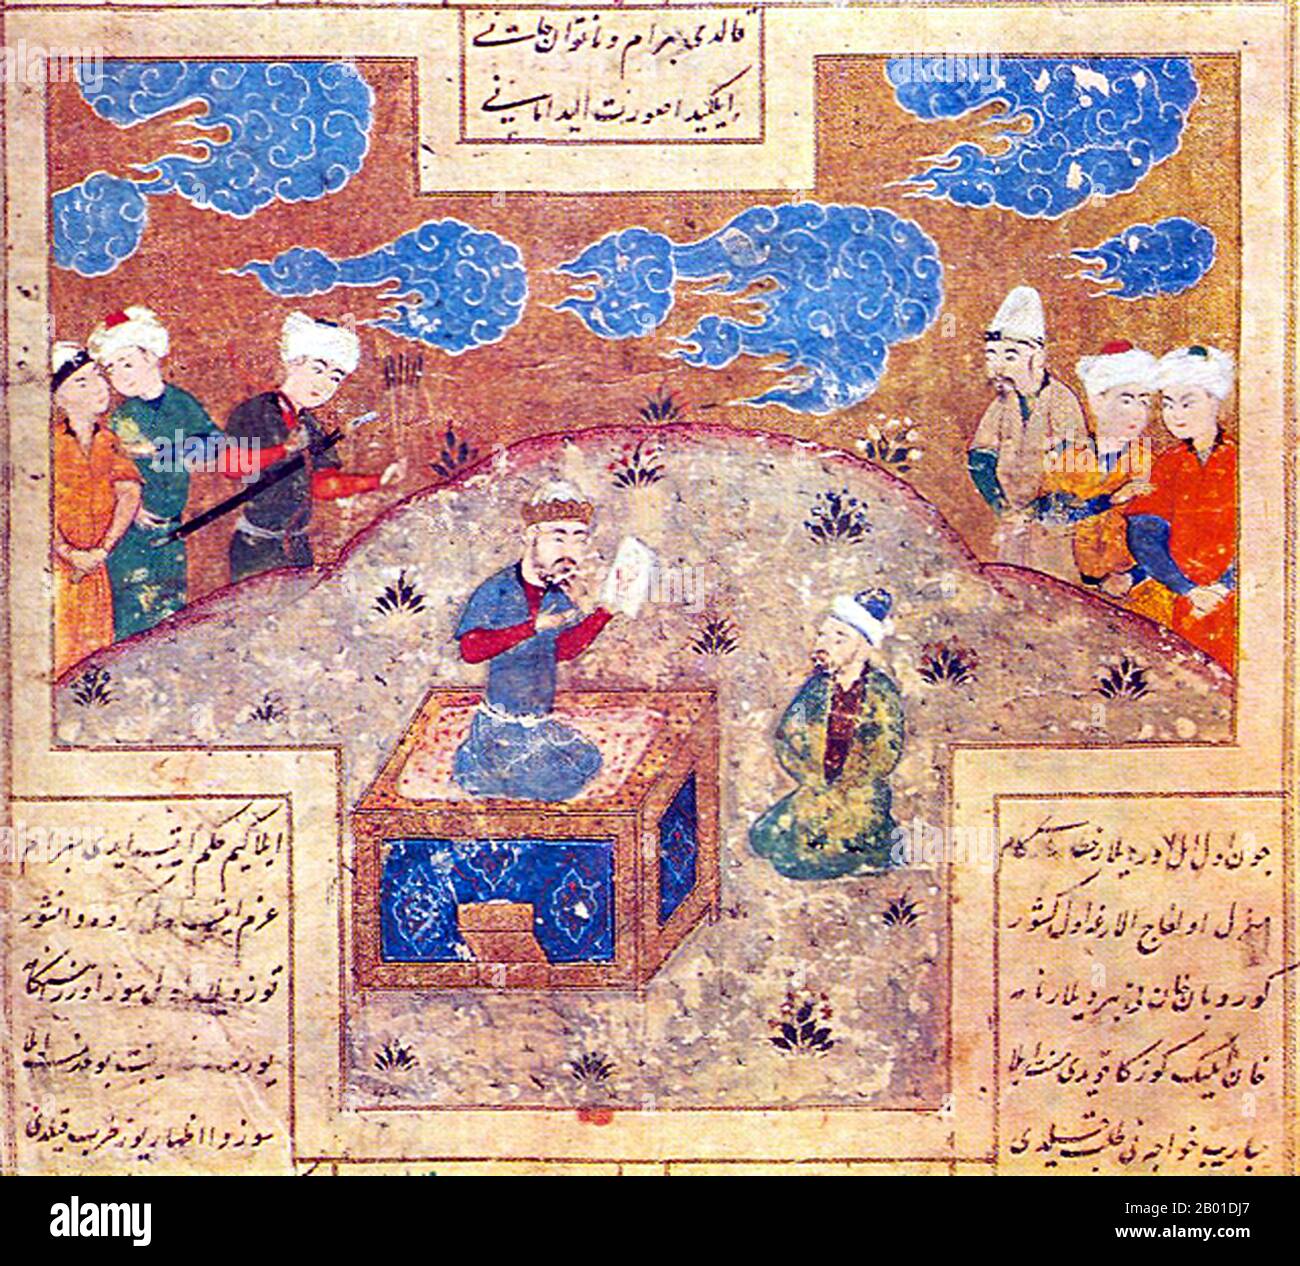 Usbekistan: Mani, der Prophet des Manichaeismus, dargestellt als Maler, der König Bahram Gur mit einem Gemälde präsentiert. Miniatur Poainting von Ali-Shir Nava'i (9. Februar 1441 bis 3. Januar 1501), c. 1521-1522. In der mittelalterlichen islamischen Tradition wird Mani als Maler beschrieben, der eine religiöse Bewegung gegen den Zoroastrianismus gegründet hat. Er wurde von Shapur I verfolgt und floh nach Turkestan, wo er Jünger schuf und Tempel mit seinen Gemälden verzierte. Er stellte im Voraus eine Höhle bereit, die eine Quelle hatte, und sagte seinen Jüngern, er käme in den Himmel und würde ein Jahr lang nicht zurückkehren. Stockfoto